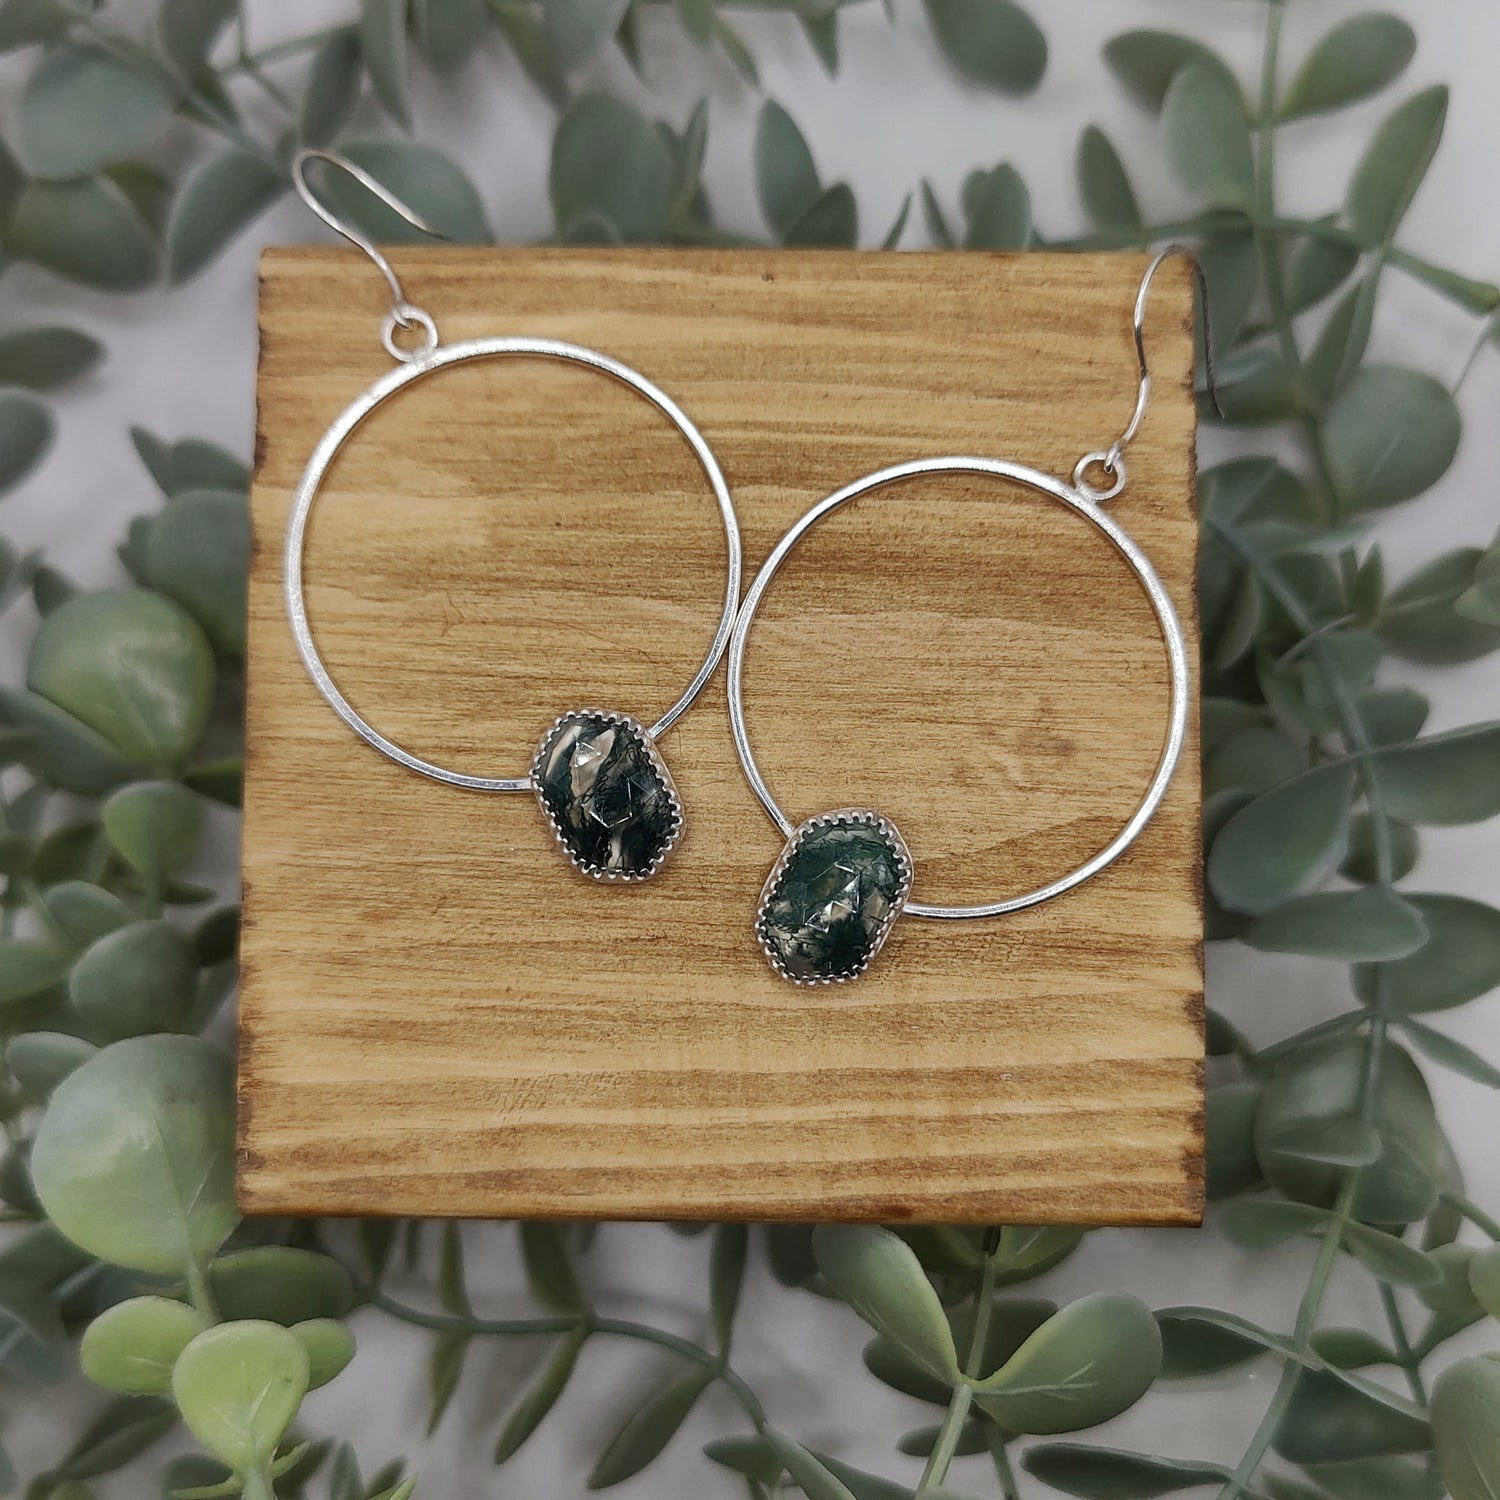 Silver hoop earrings with miss agate stones